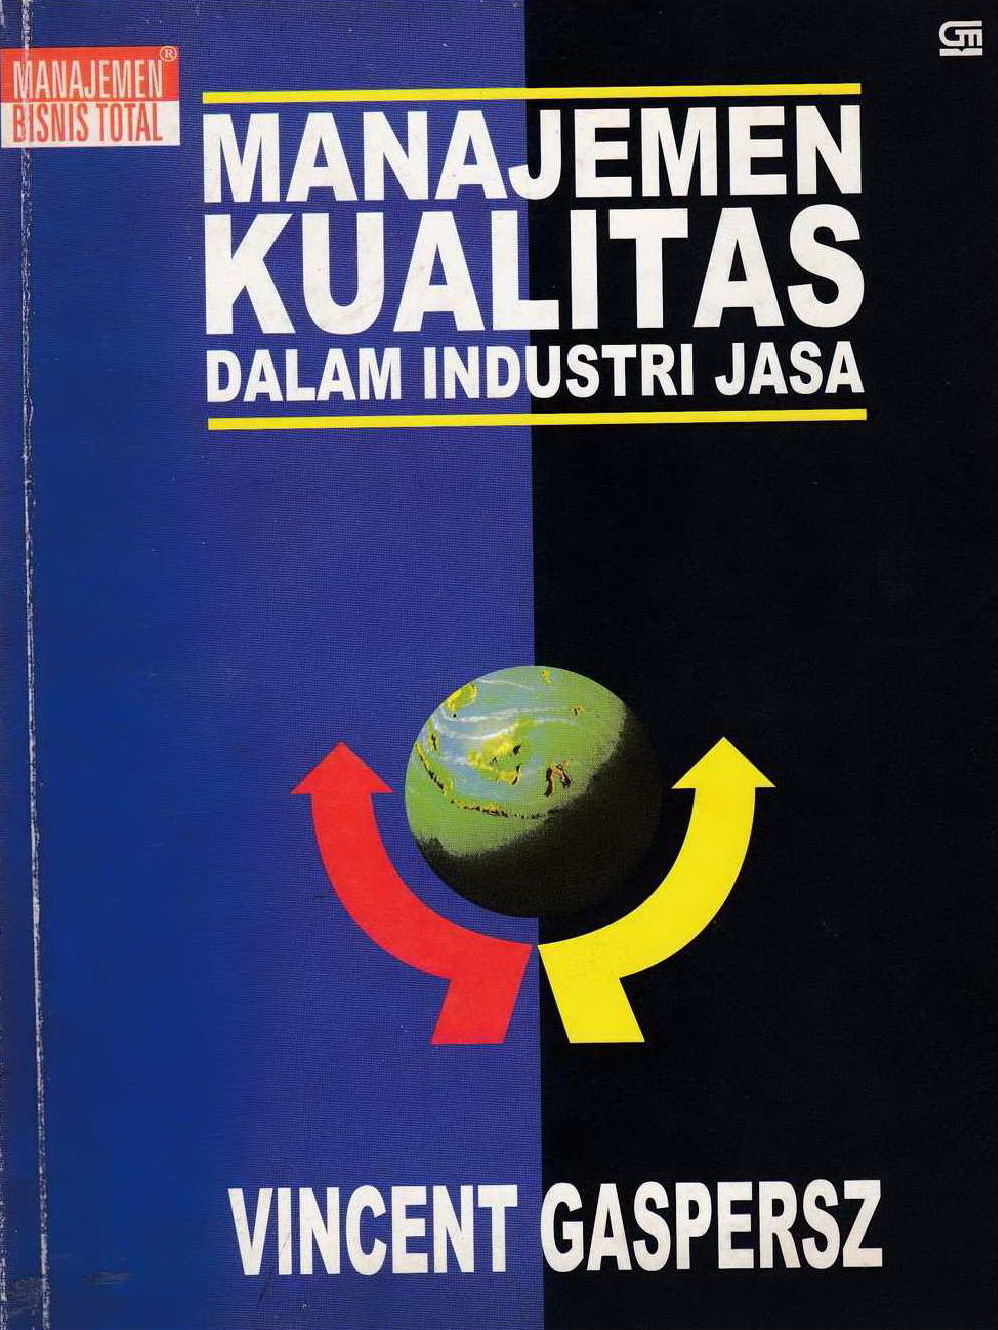 1997 Manajemen Kualitas Dalam Industri Jasa VG